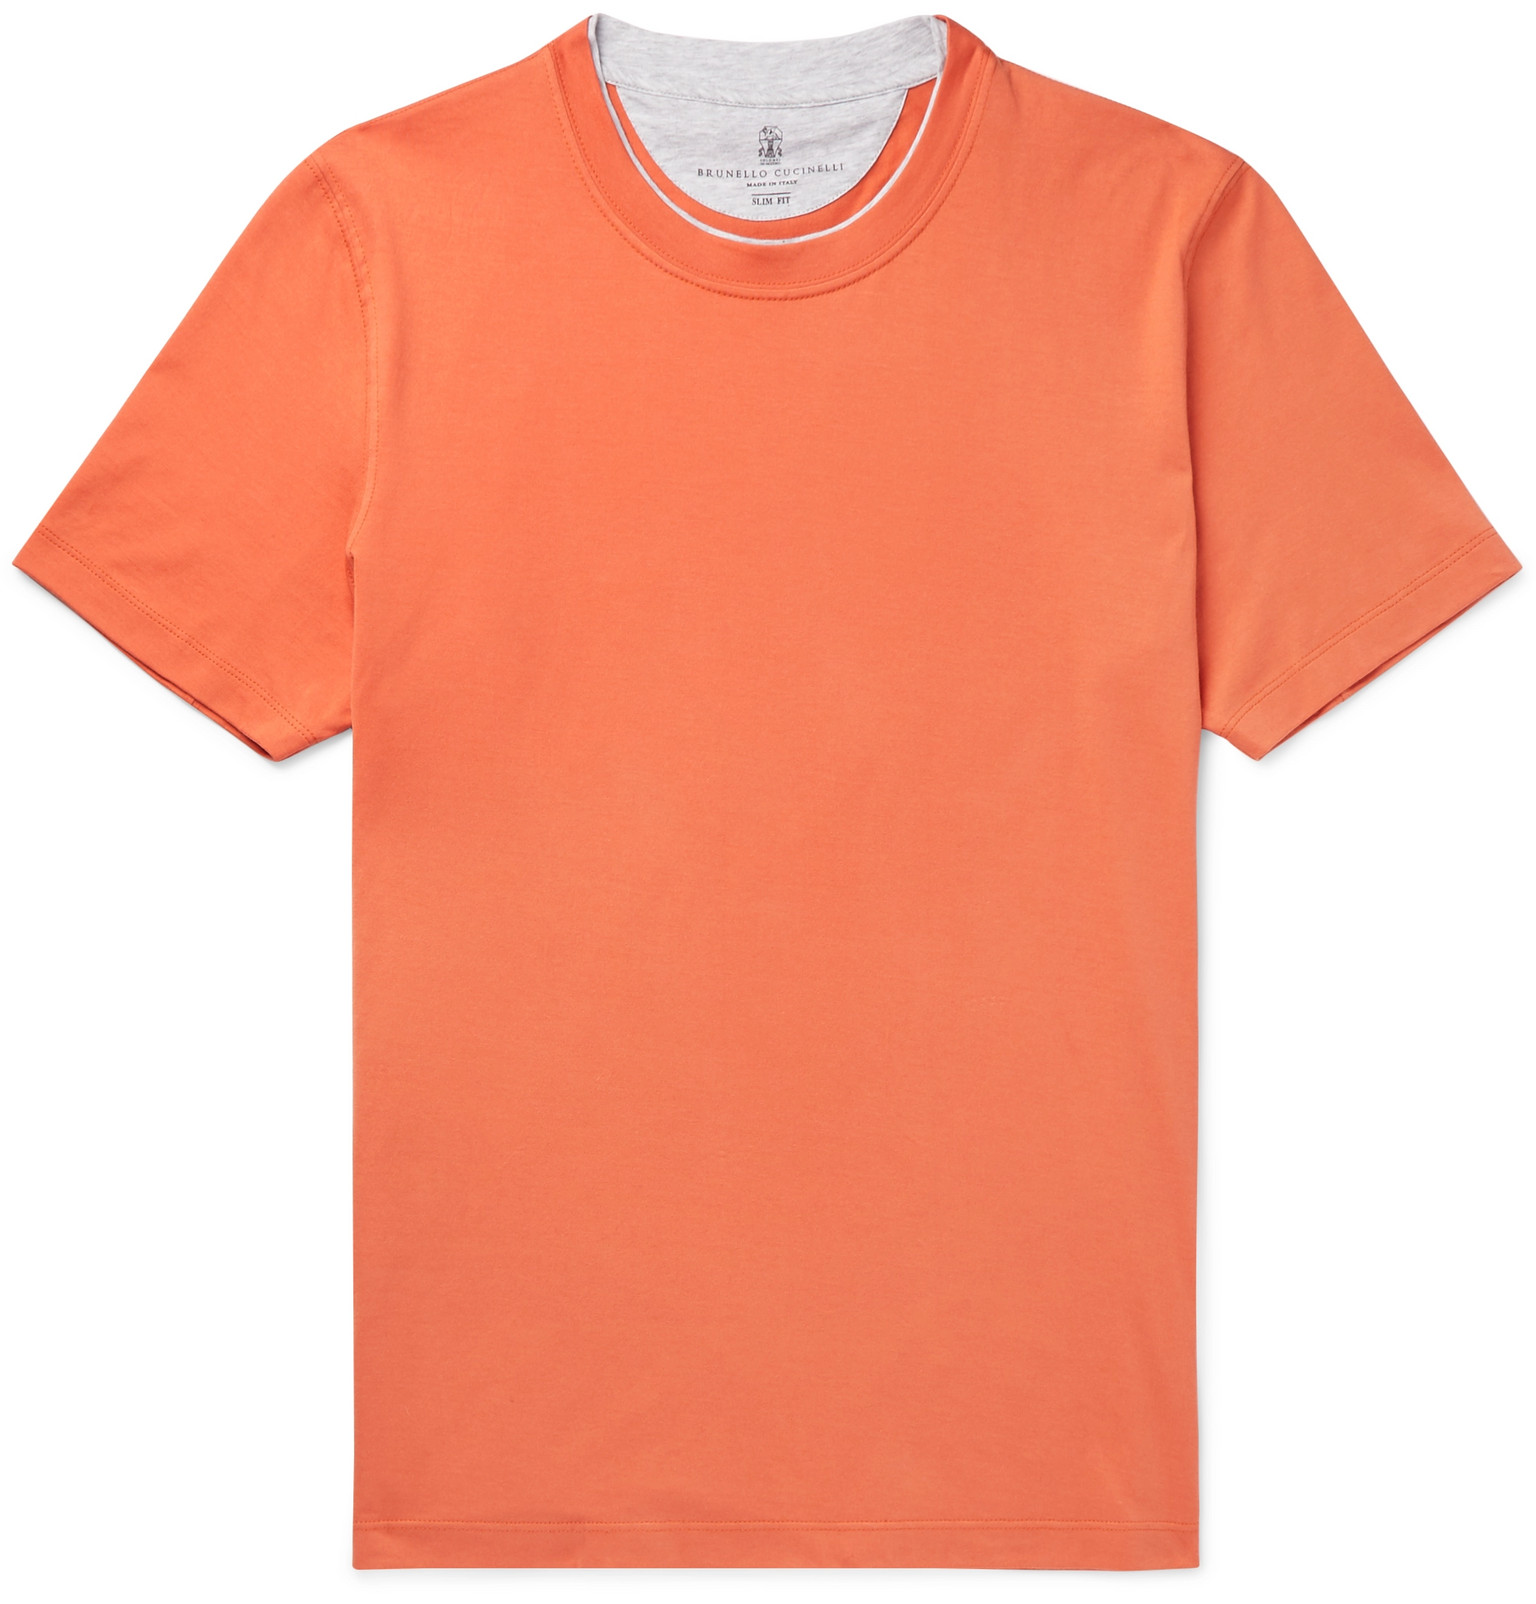 Brunello Cucinelli - Layered Cotton-Jersey T-Shirt - Men - Orange | The ...